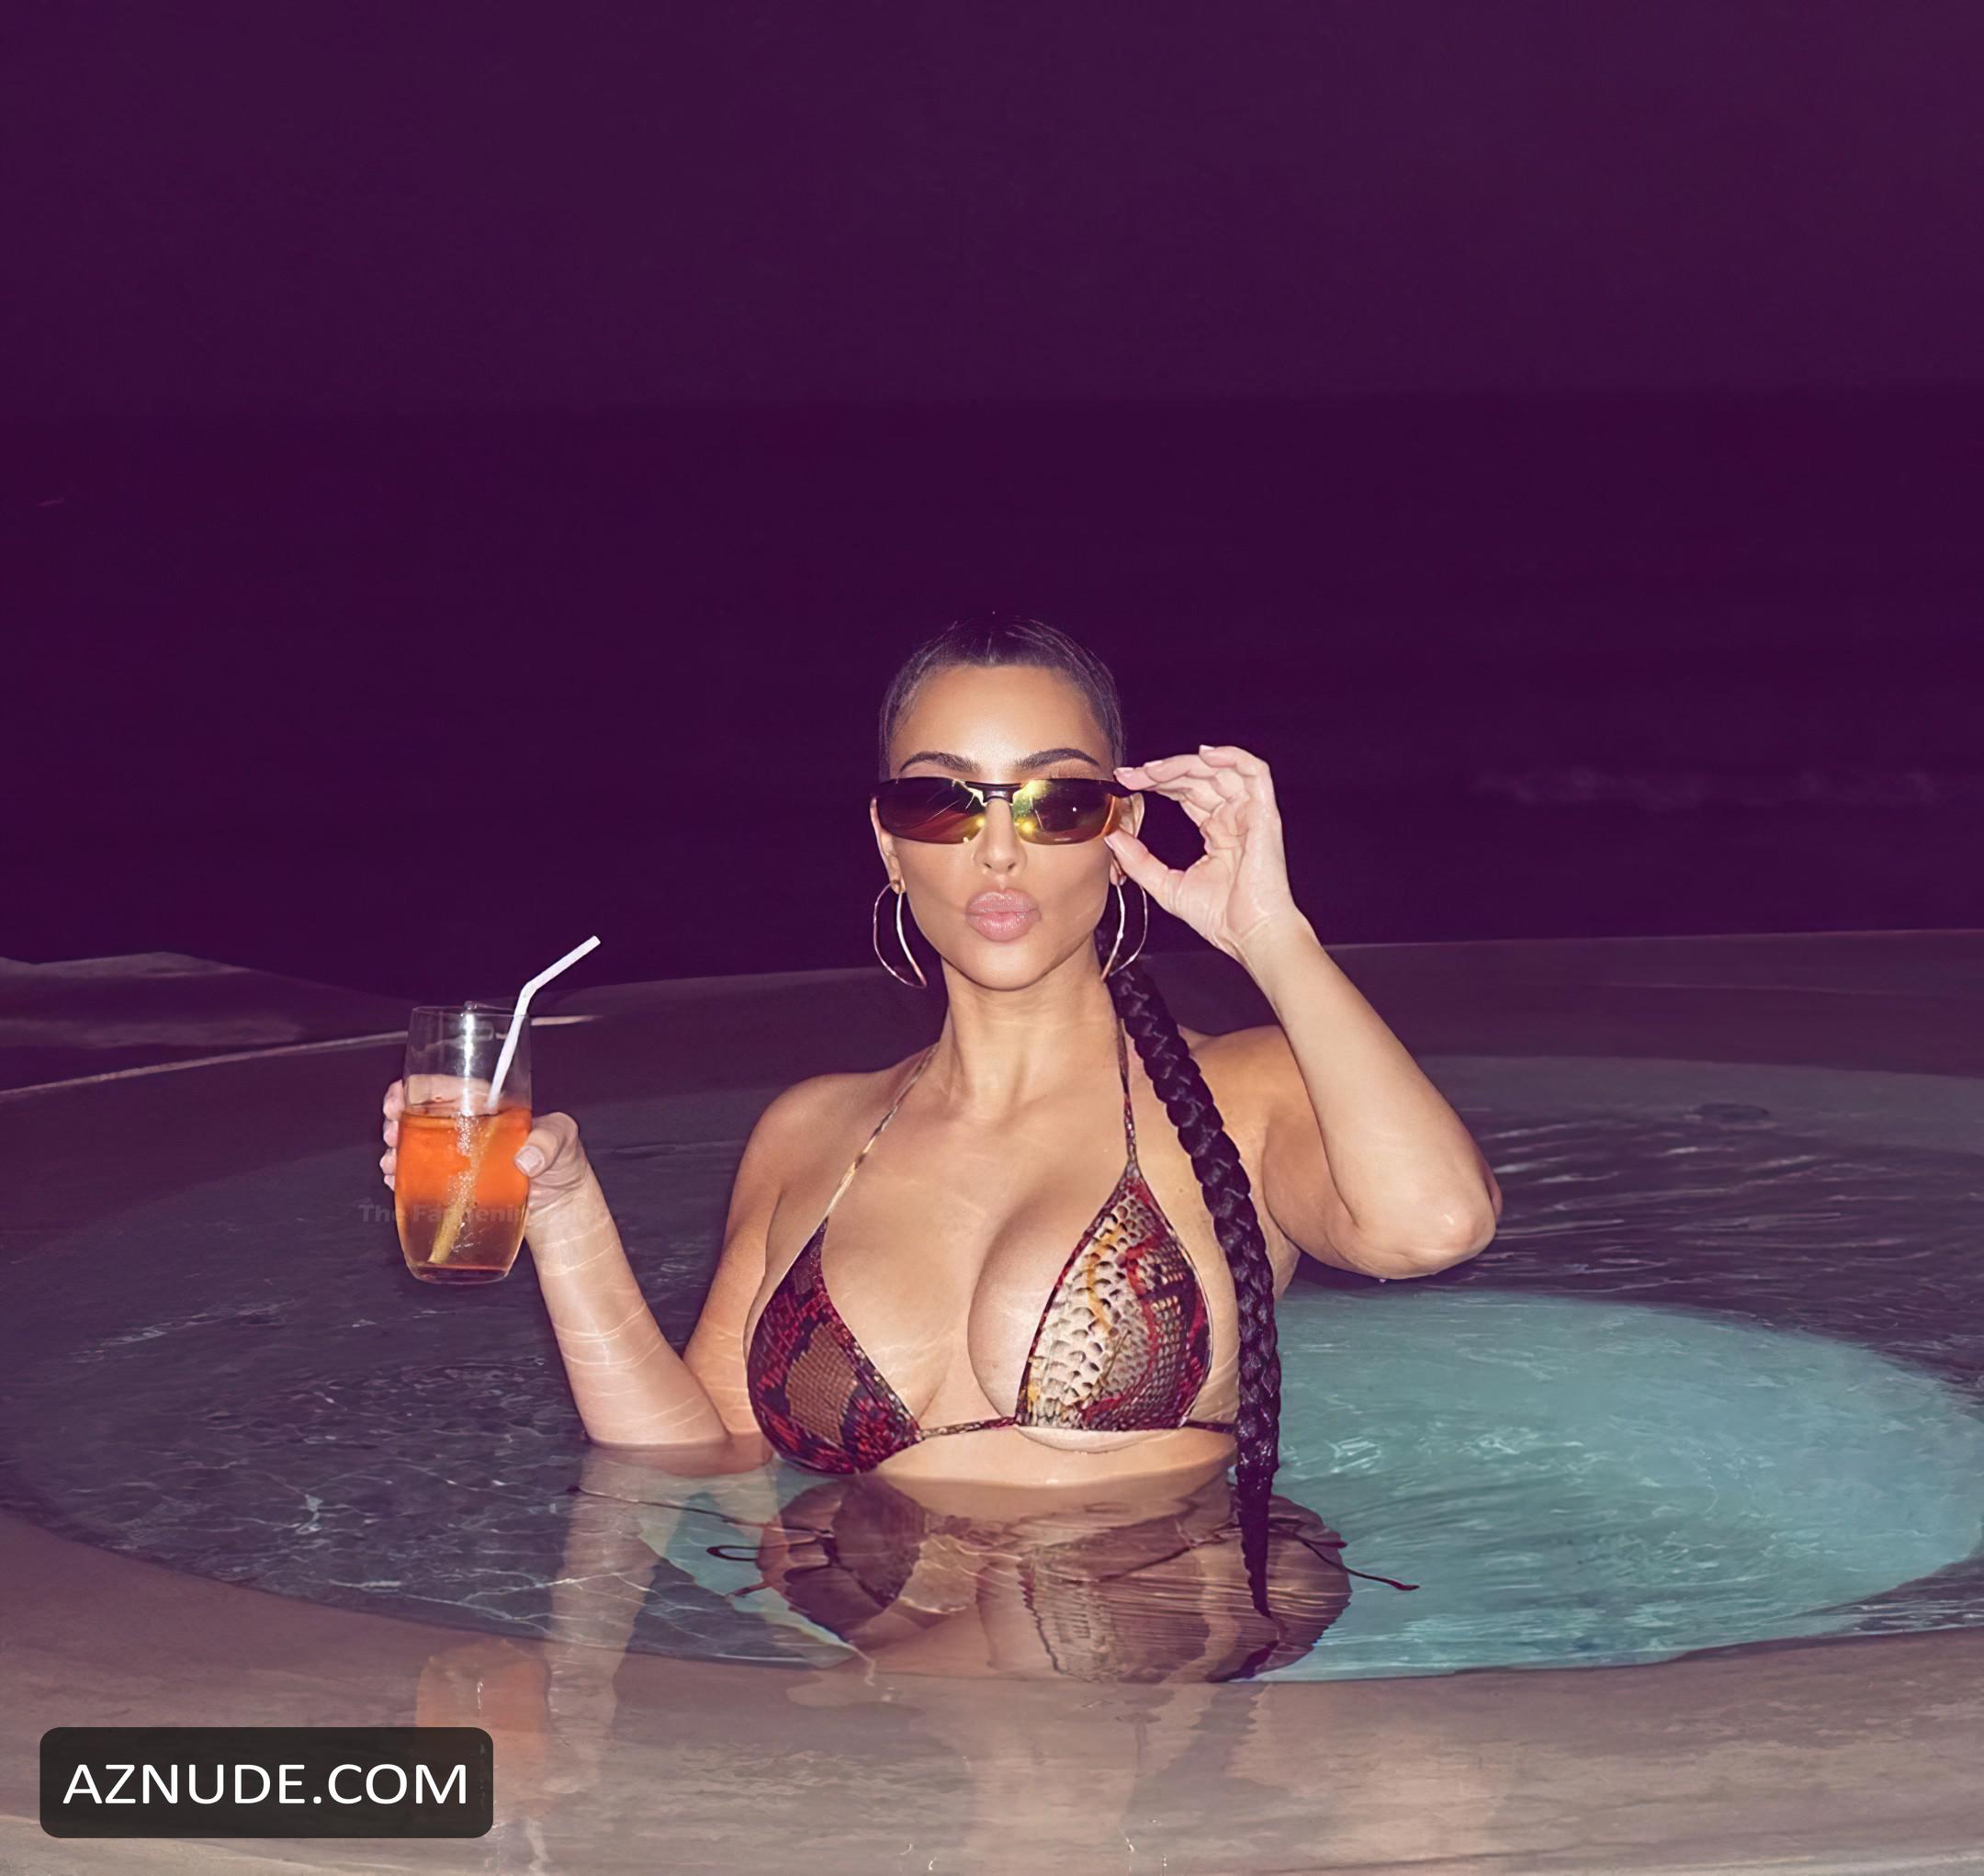 Kim Kardashian Poses In A Bikini In The Pool Before Going To Bed Aznude